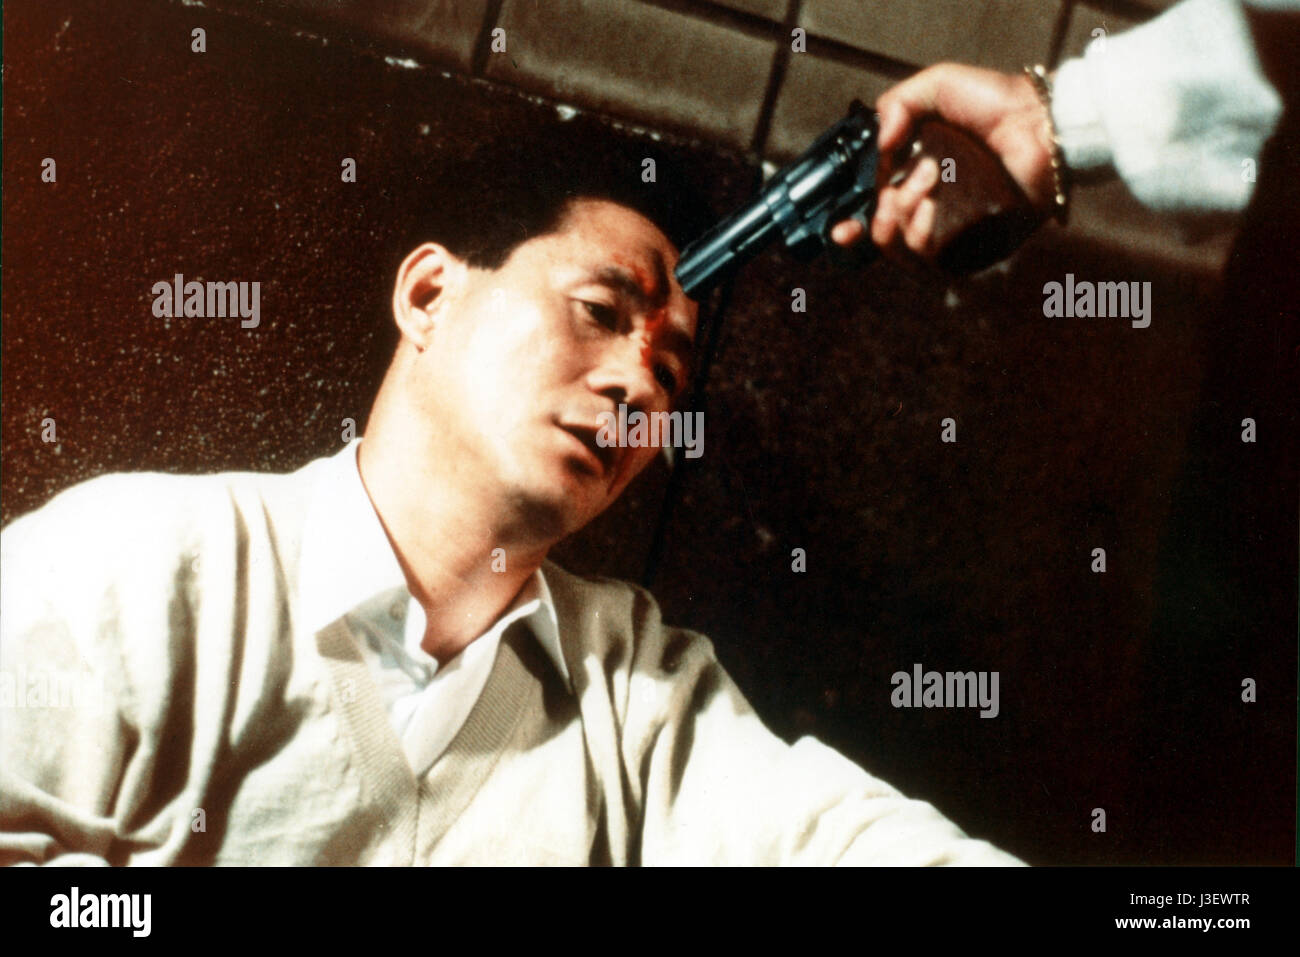 Sono otoko, kyôbô ni tsuki Yera : 1989 Directed by Takeshi Kitano Takeshi Kitano Stock Photo